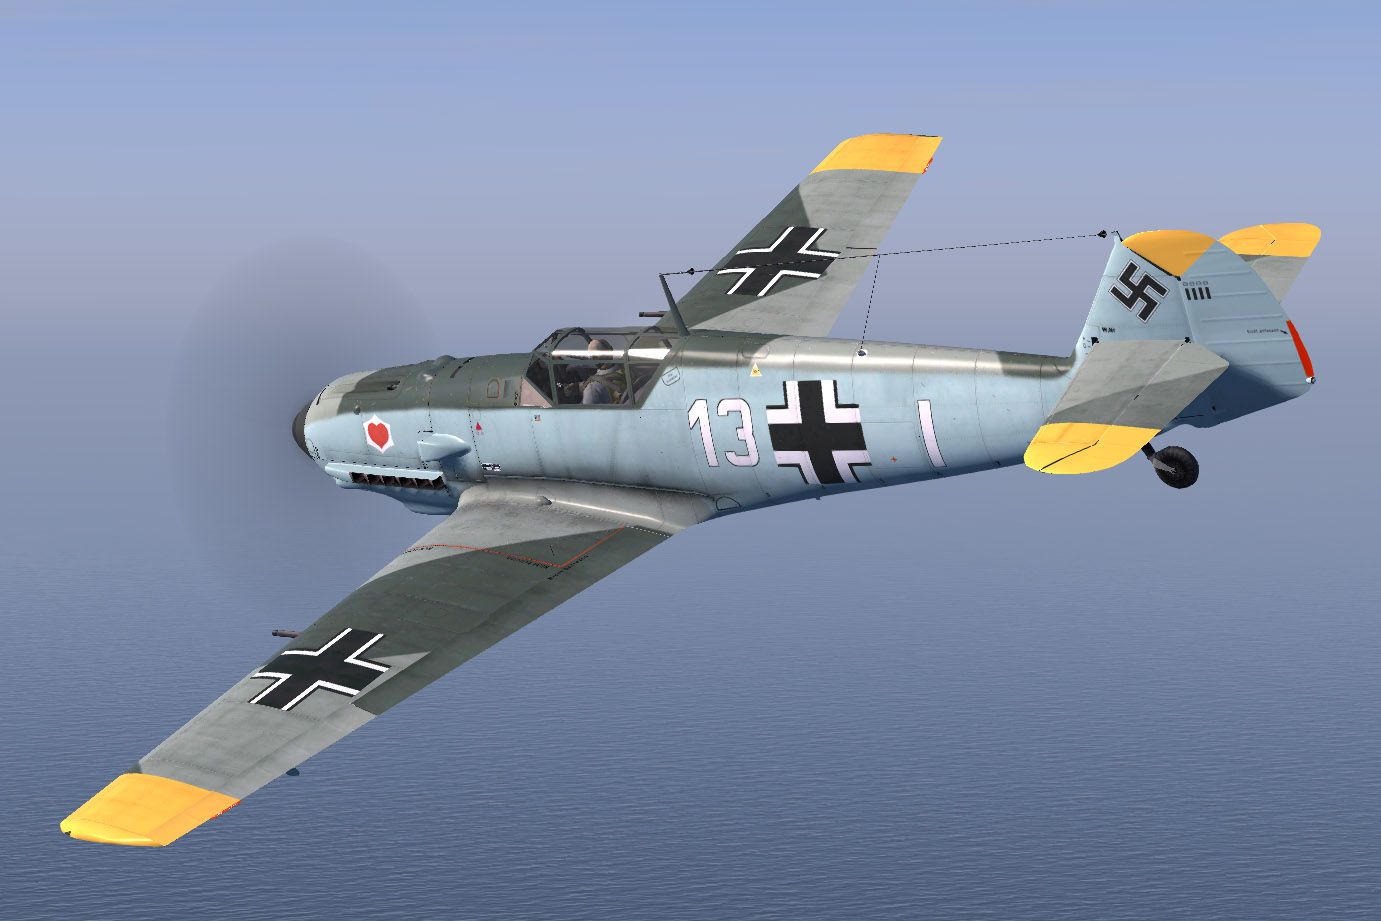 Bf109E-3_Blume_JG26